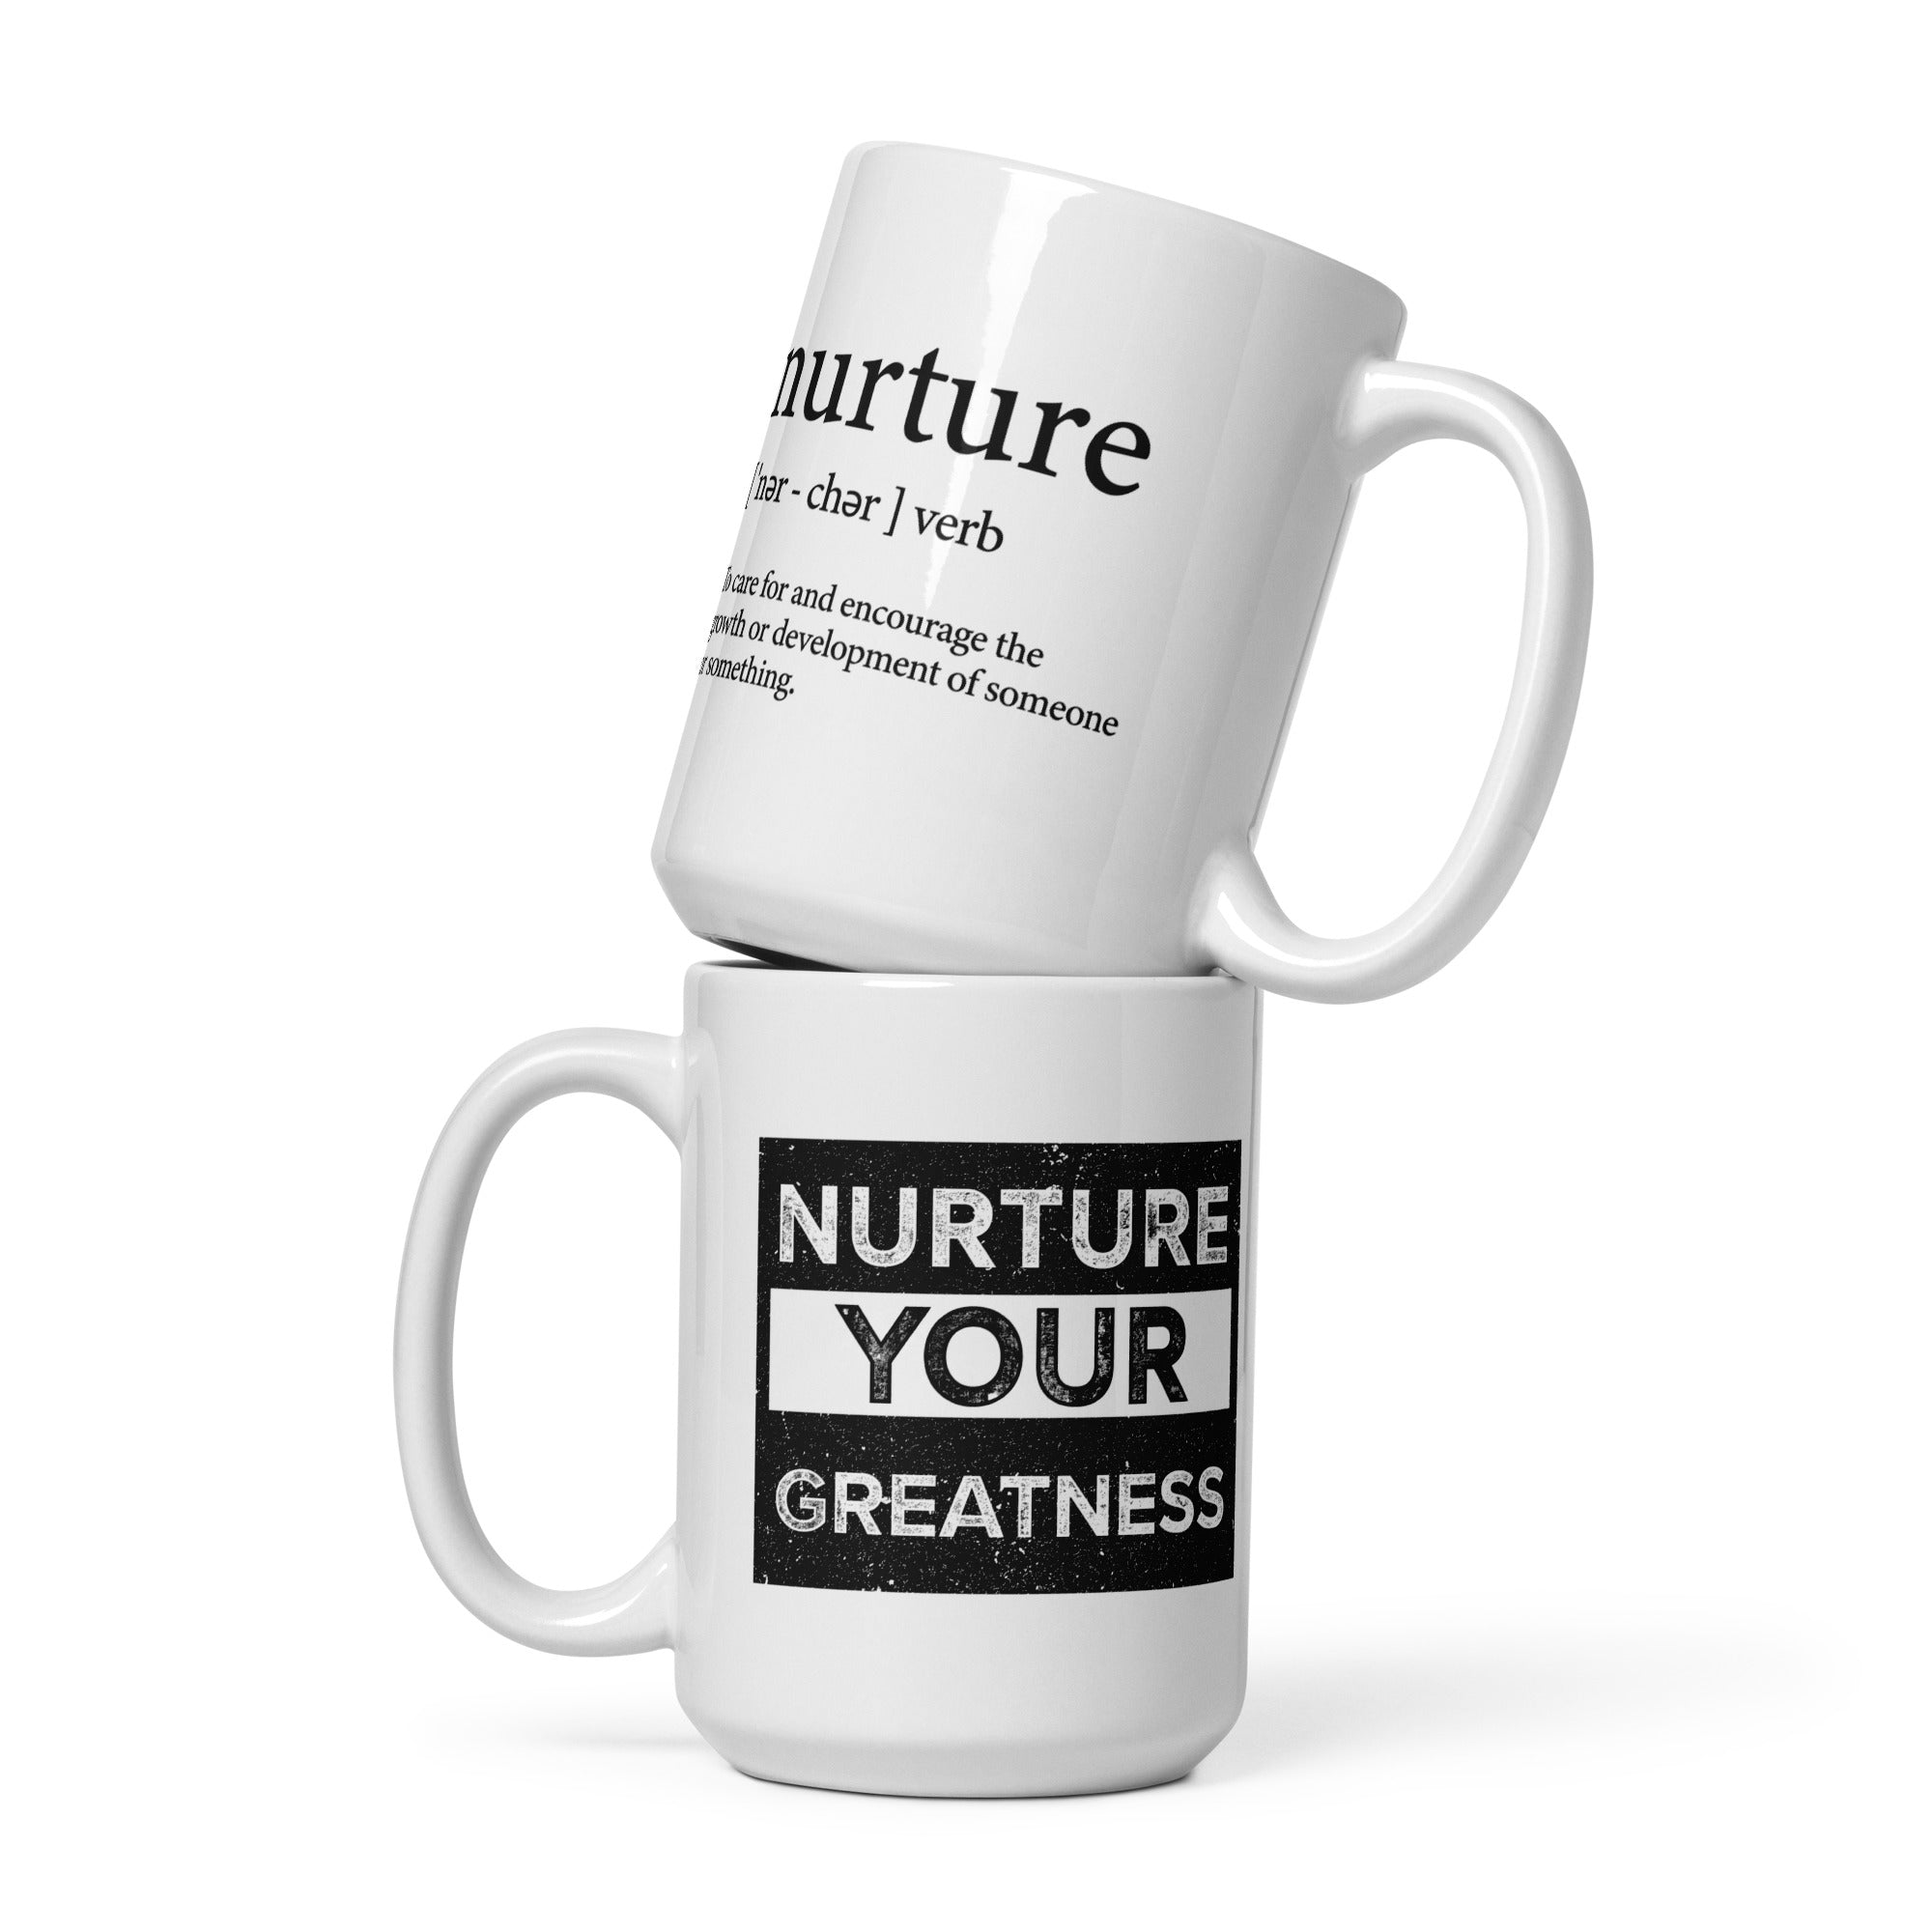 Nurture Your Greatness White glossy mug